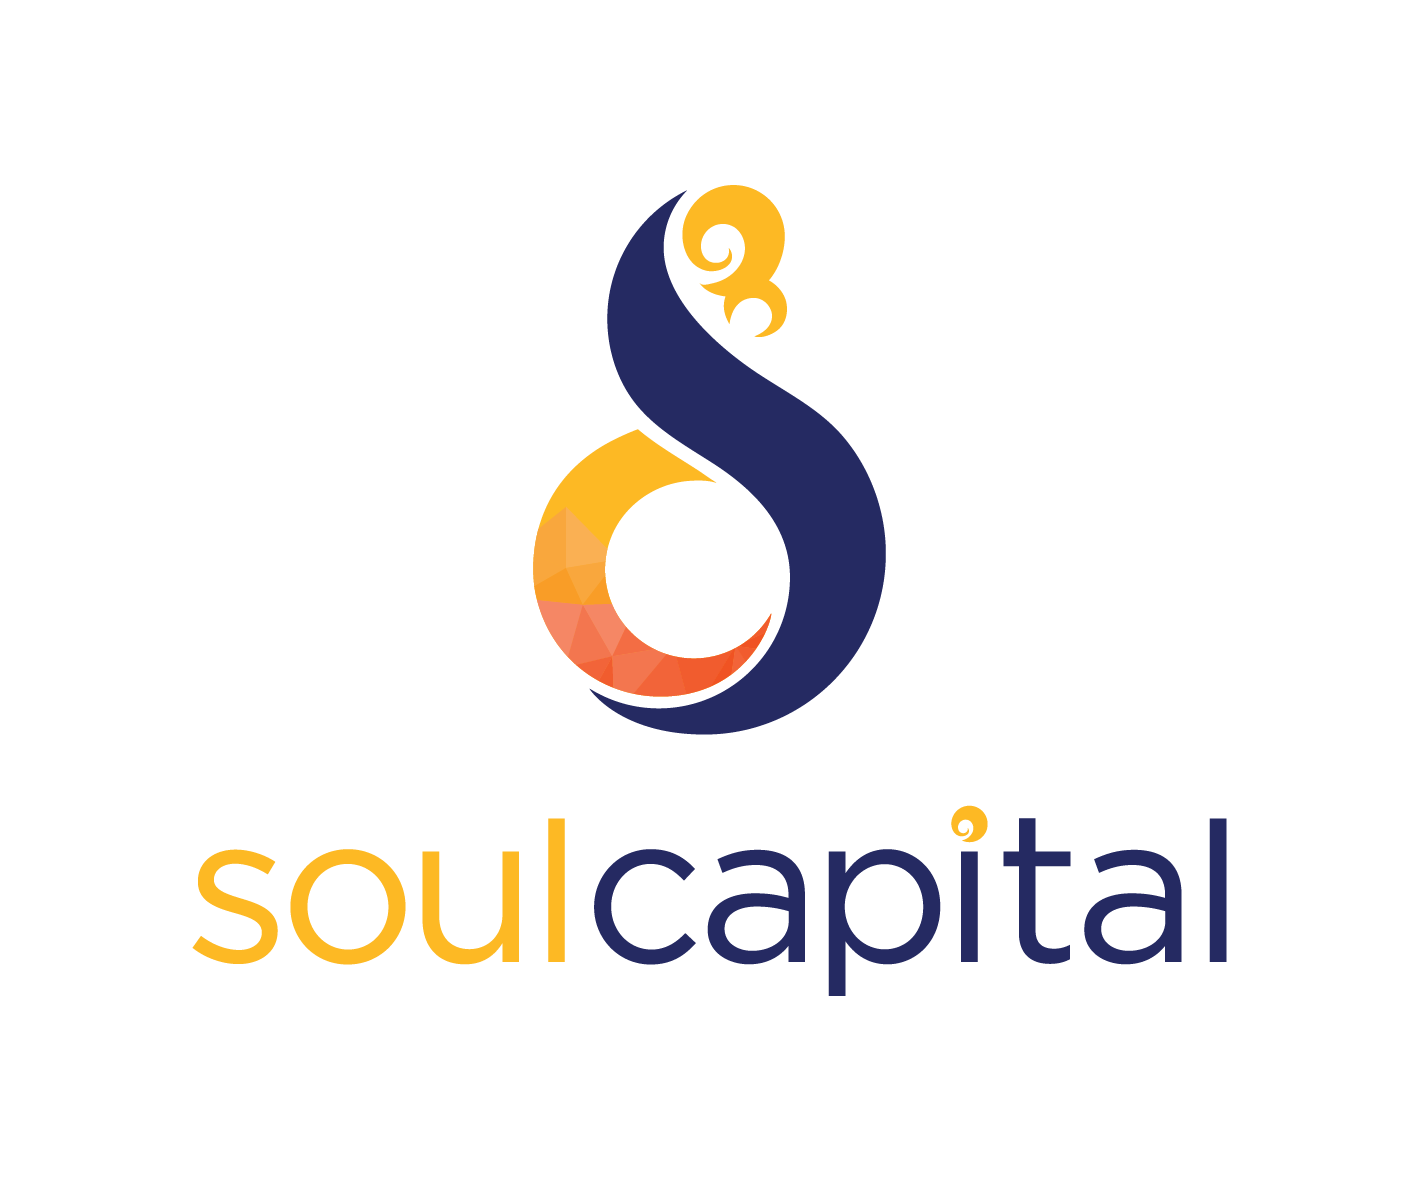 Soul Capital